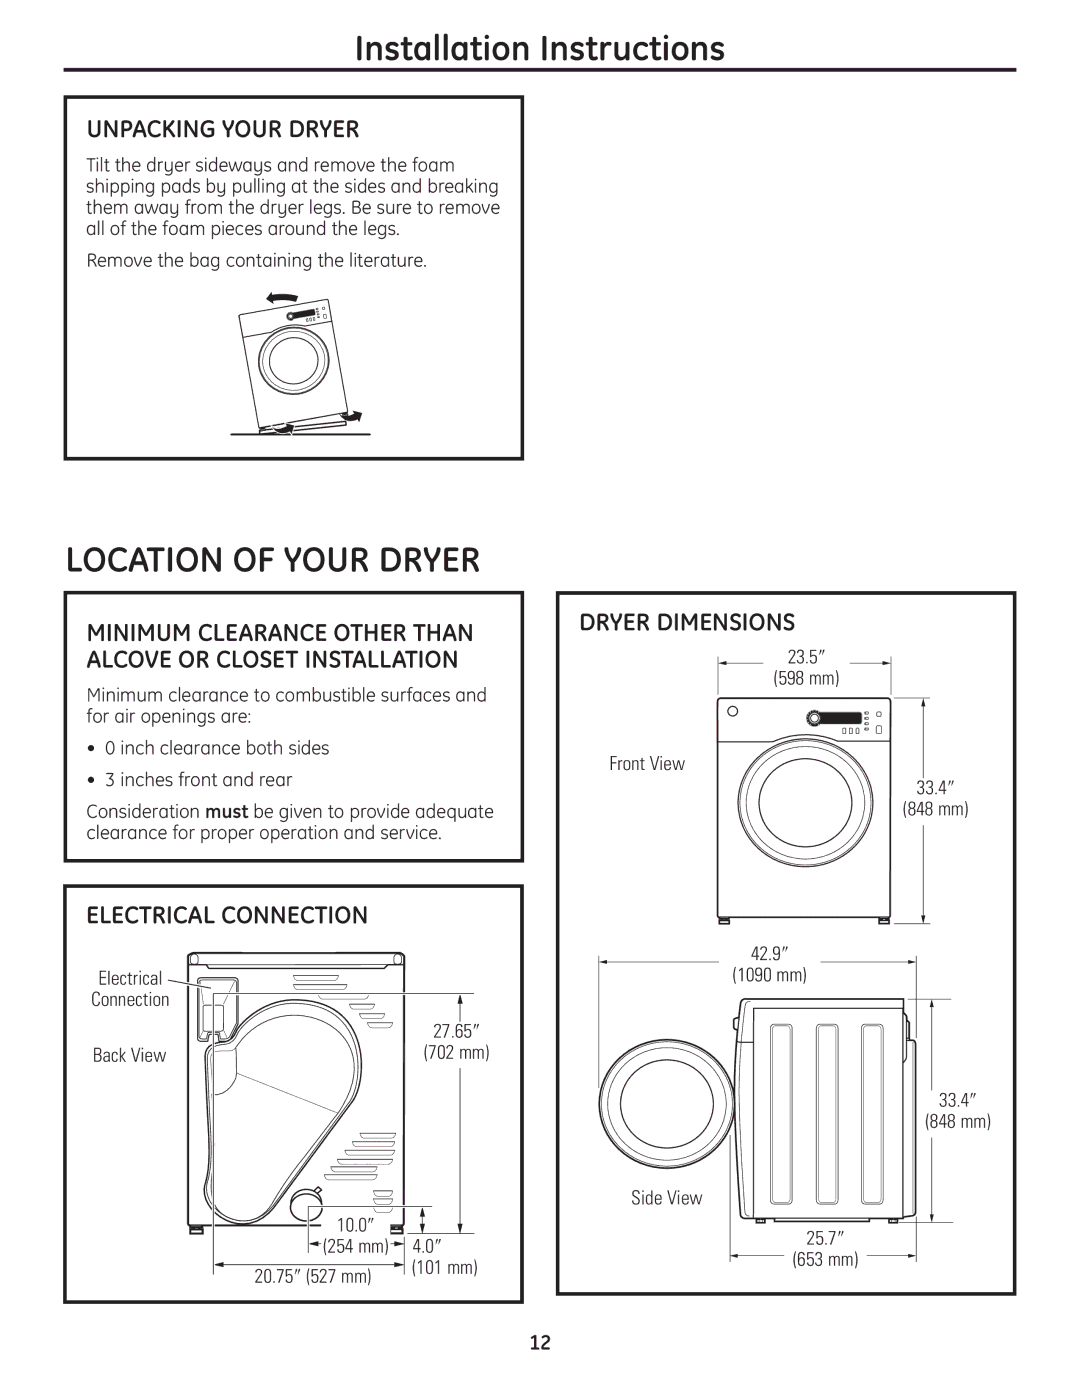 GE PCVH485EK, PCVH480EK owner manual Unpacking Your Dryer, Electrical Connection, Dryer Dimensions 